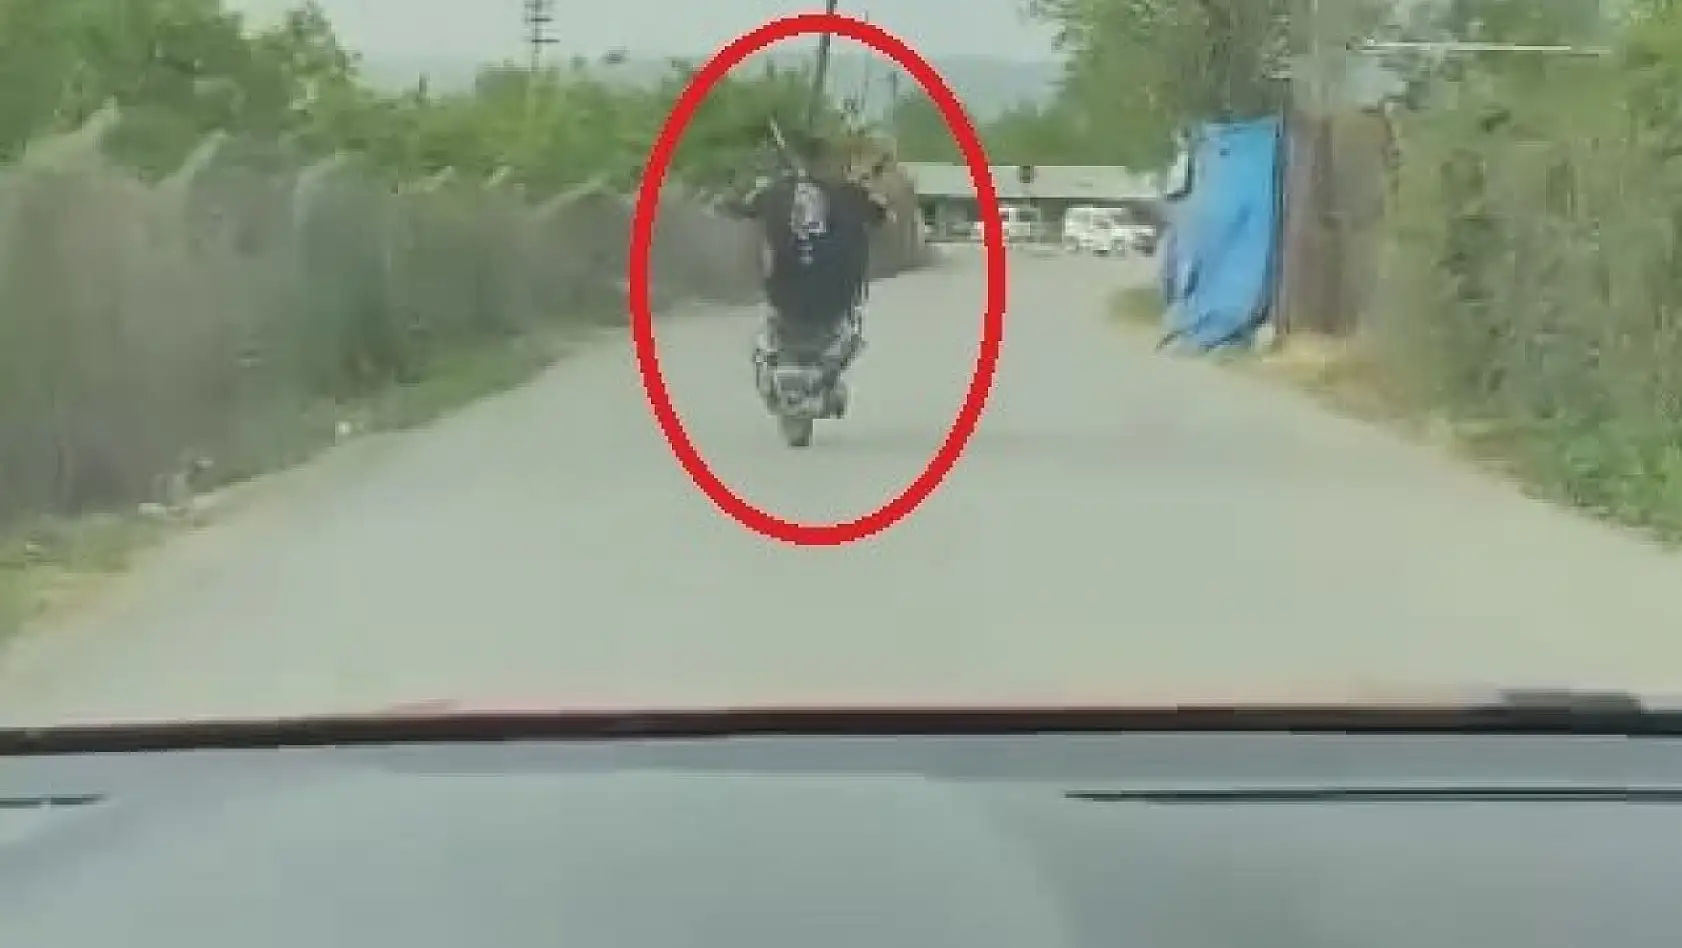 Motosikletiyle ön kaldırdı, kayarak yere düştü